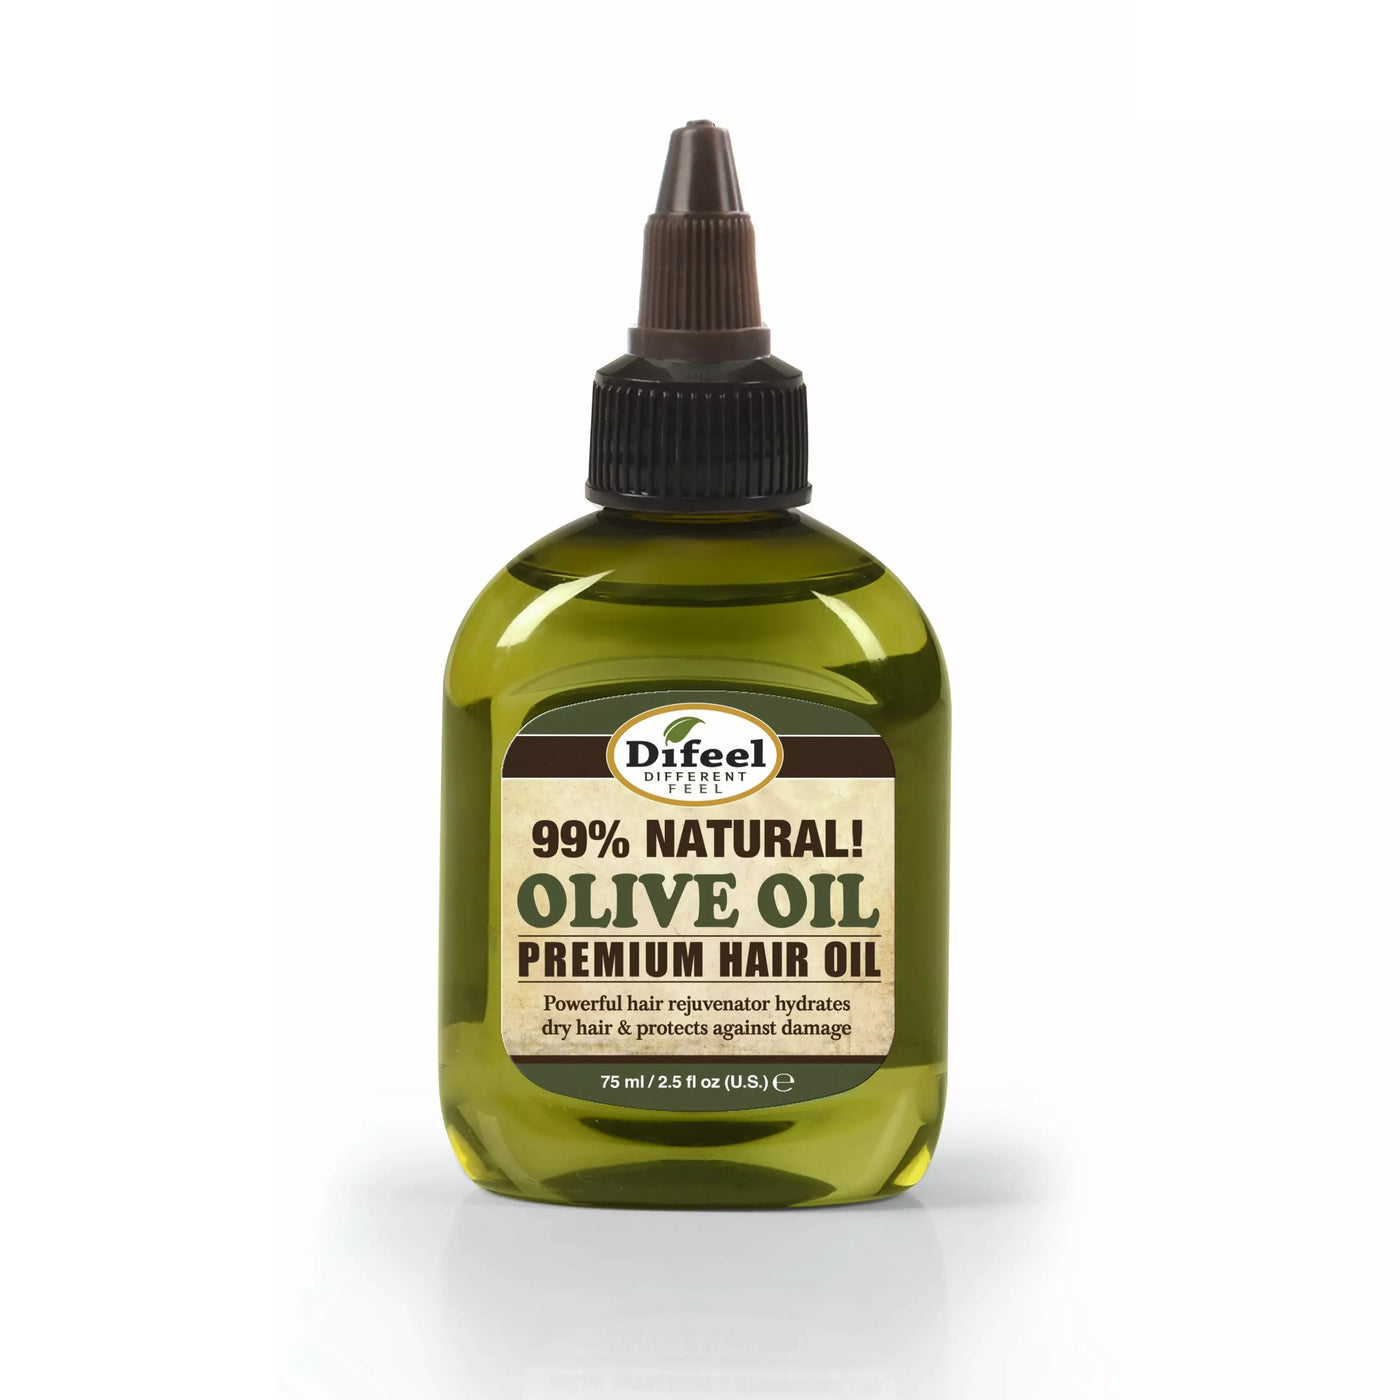 Difeel Extra Virgin Olive Oil 2.5oz - Sfbeautybar